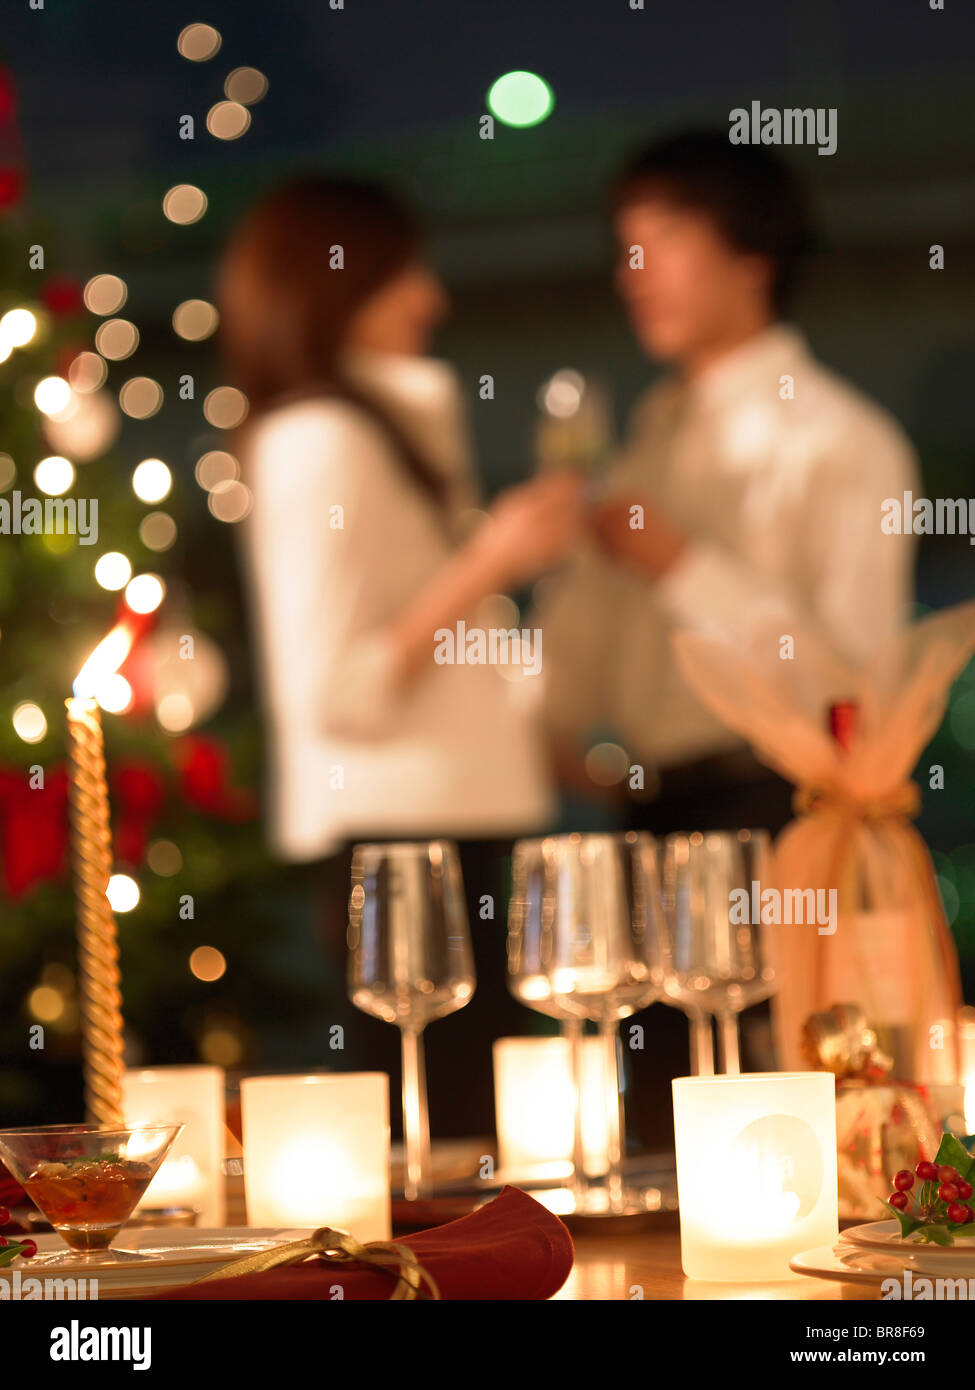 Wineglasses et les bougies sur table, Sweden, differential focus Banque D'Images